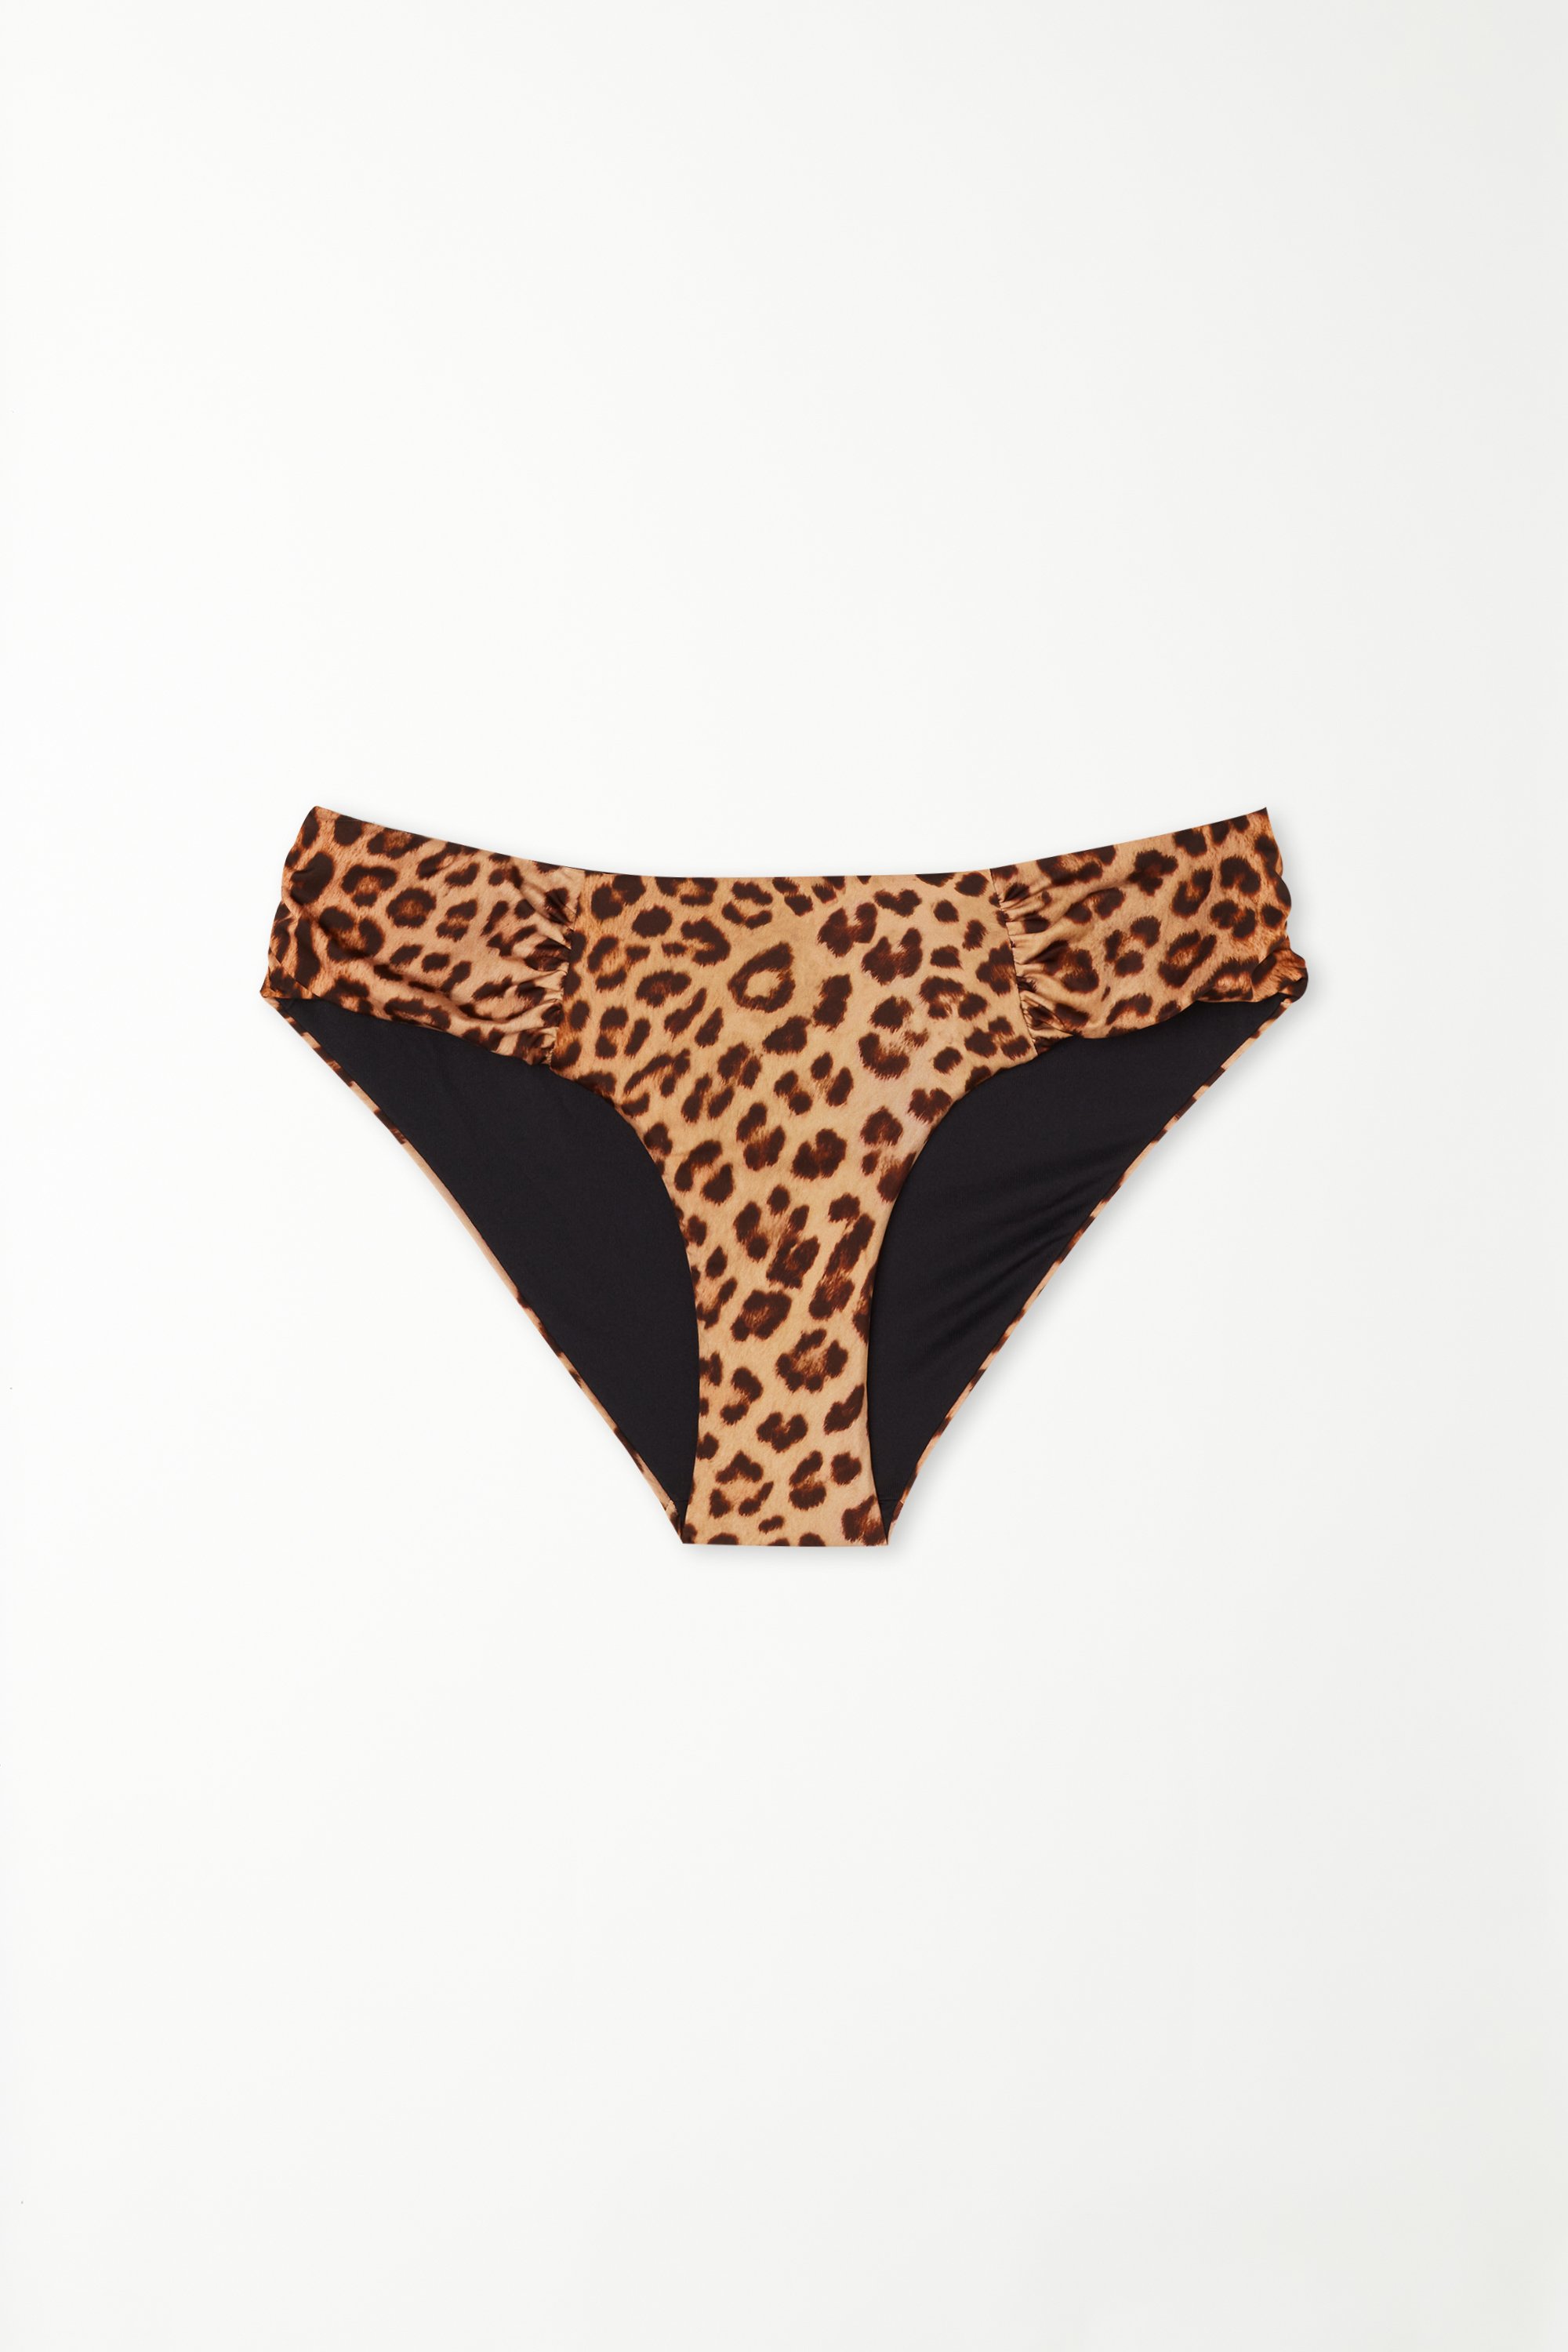 Wild Leopard Gathered High-Cut Bikini Bottoms